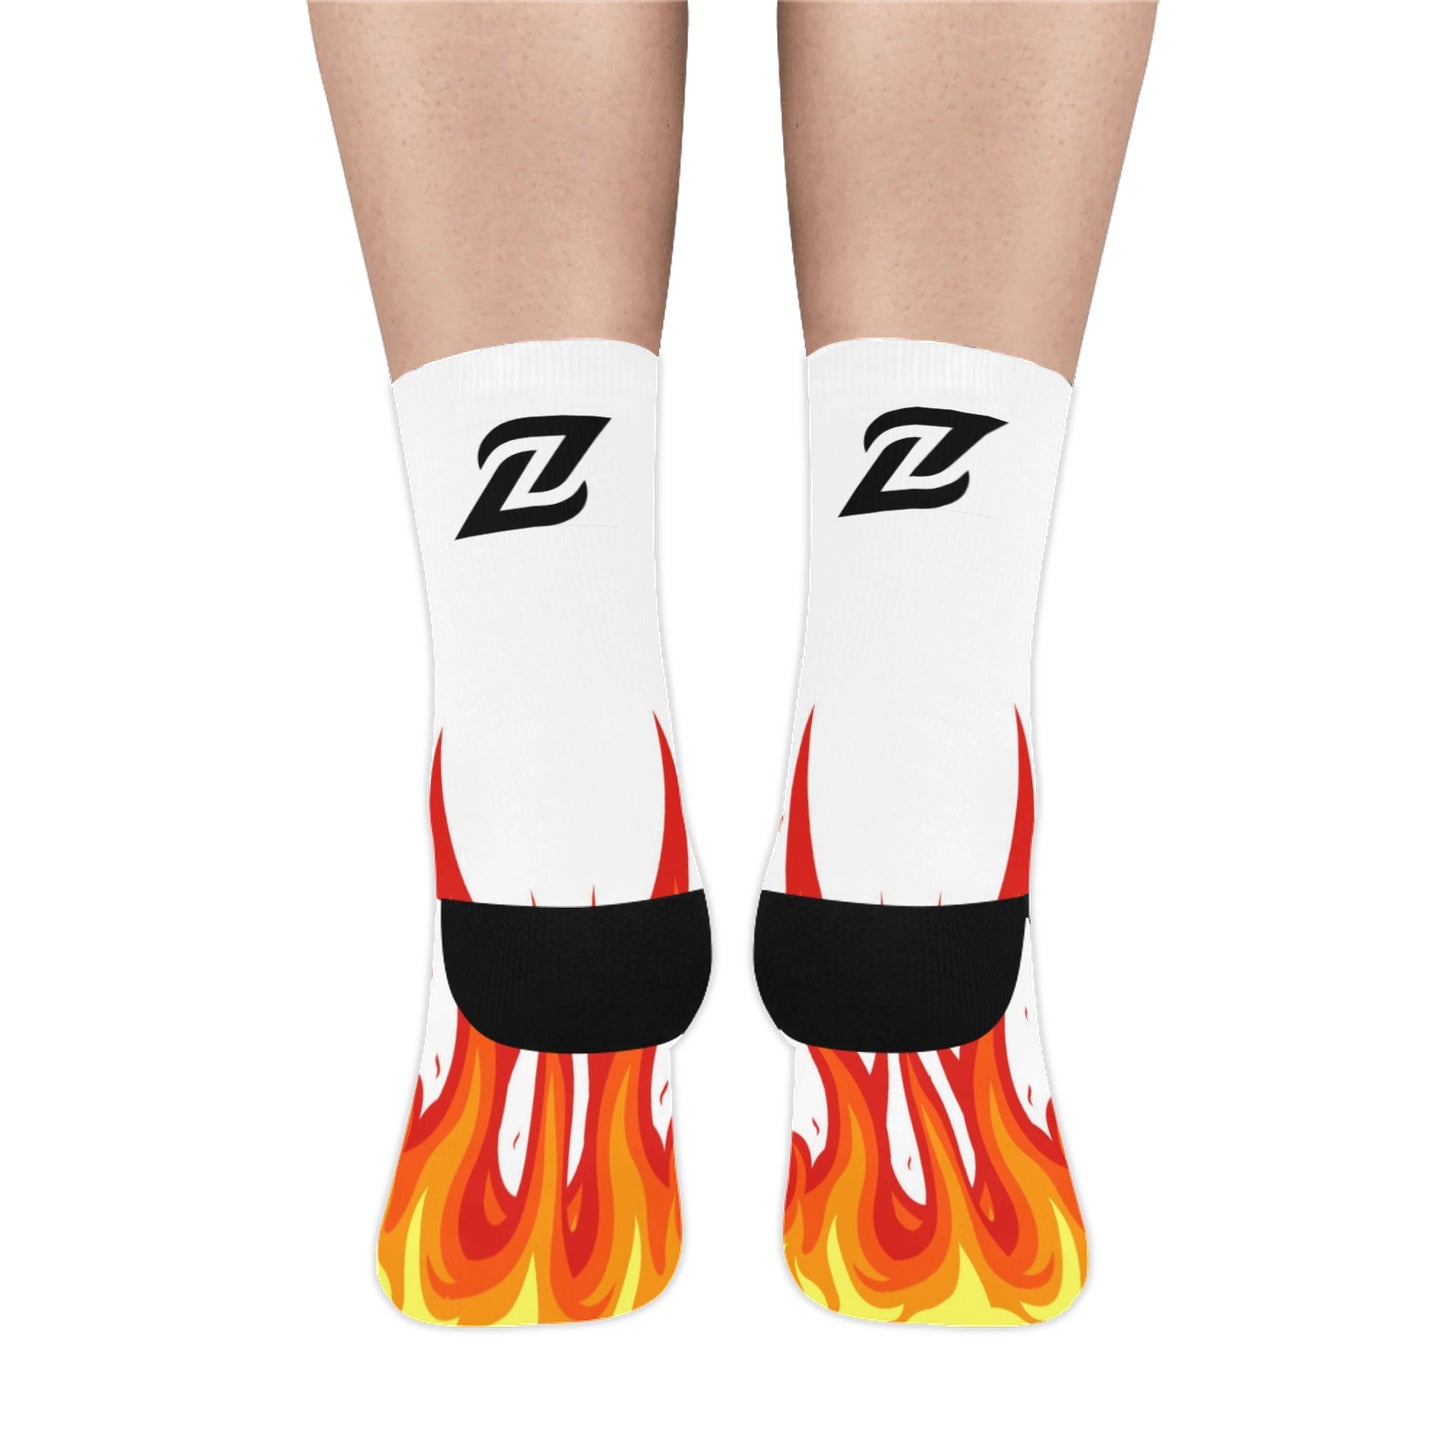 Zen Socks - Fire